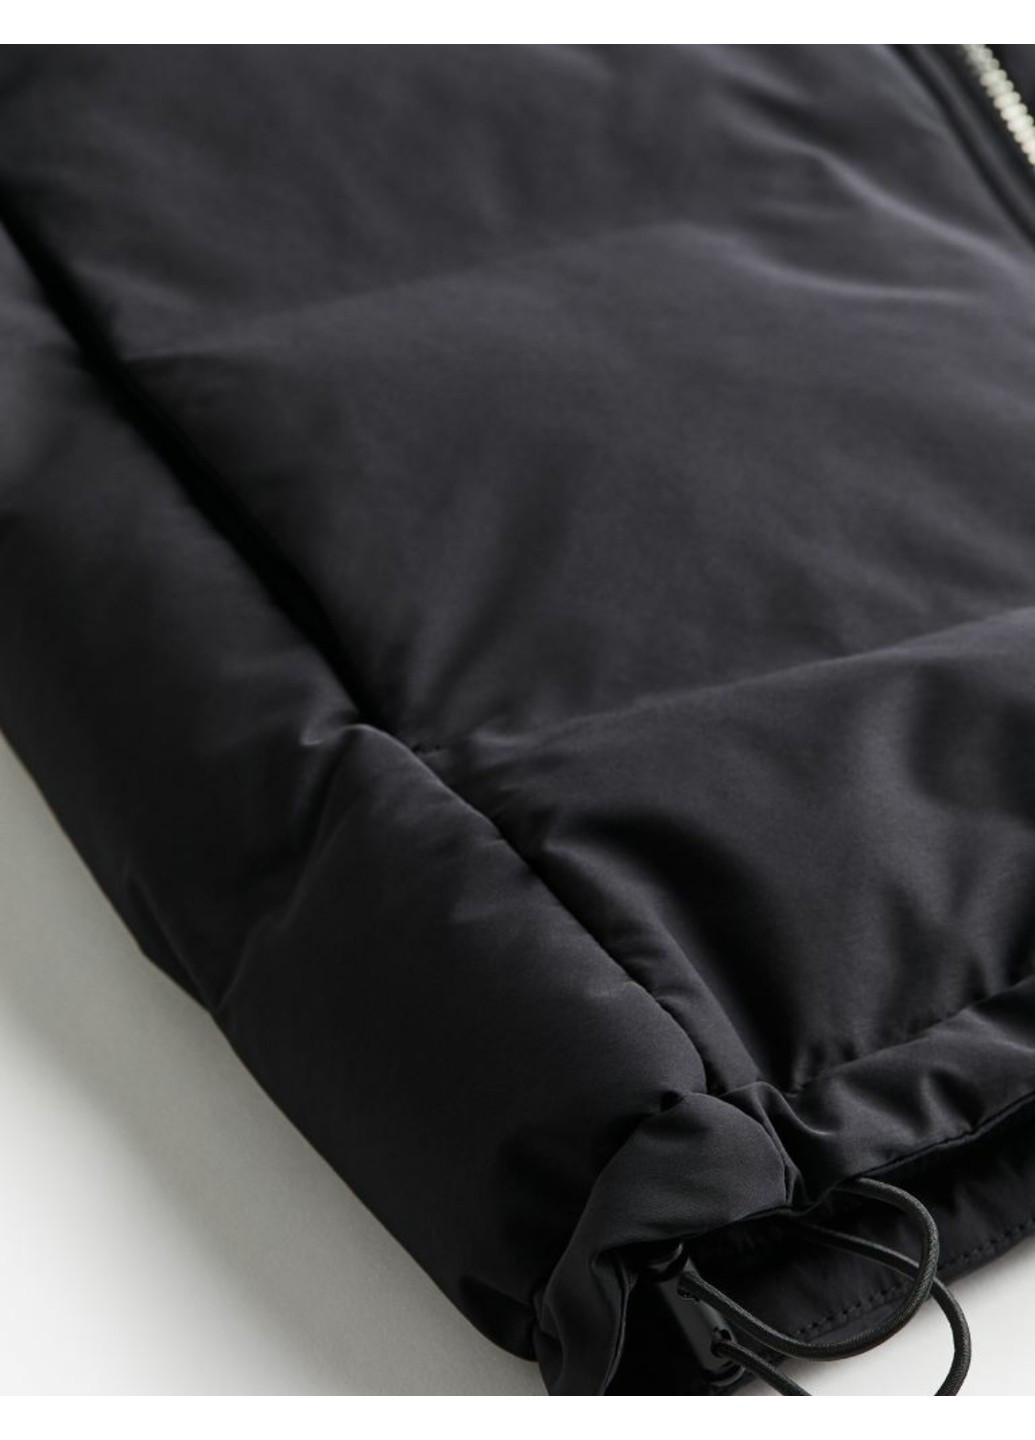 Чорна демісезонна чоловіча куртка regular fit (56221) s чорна H&M